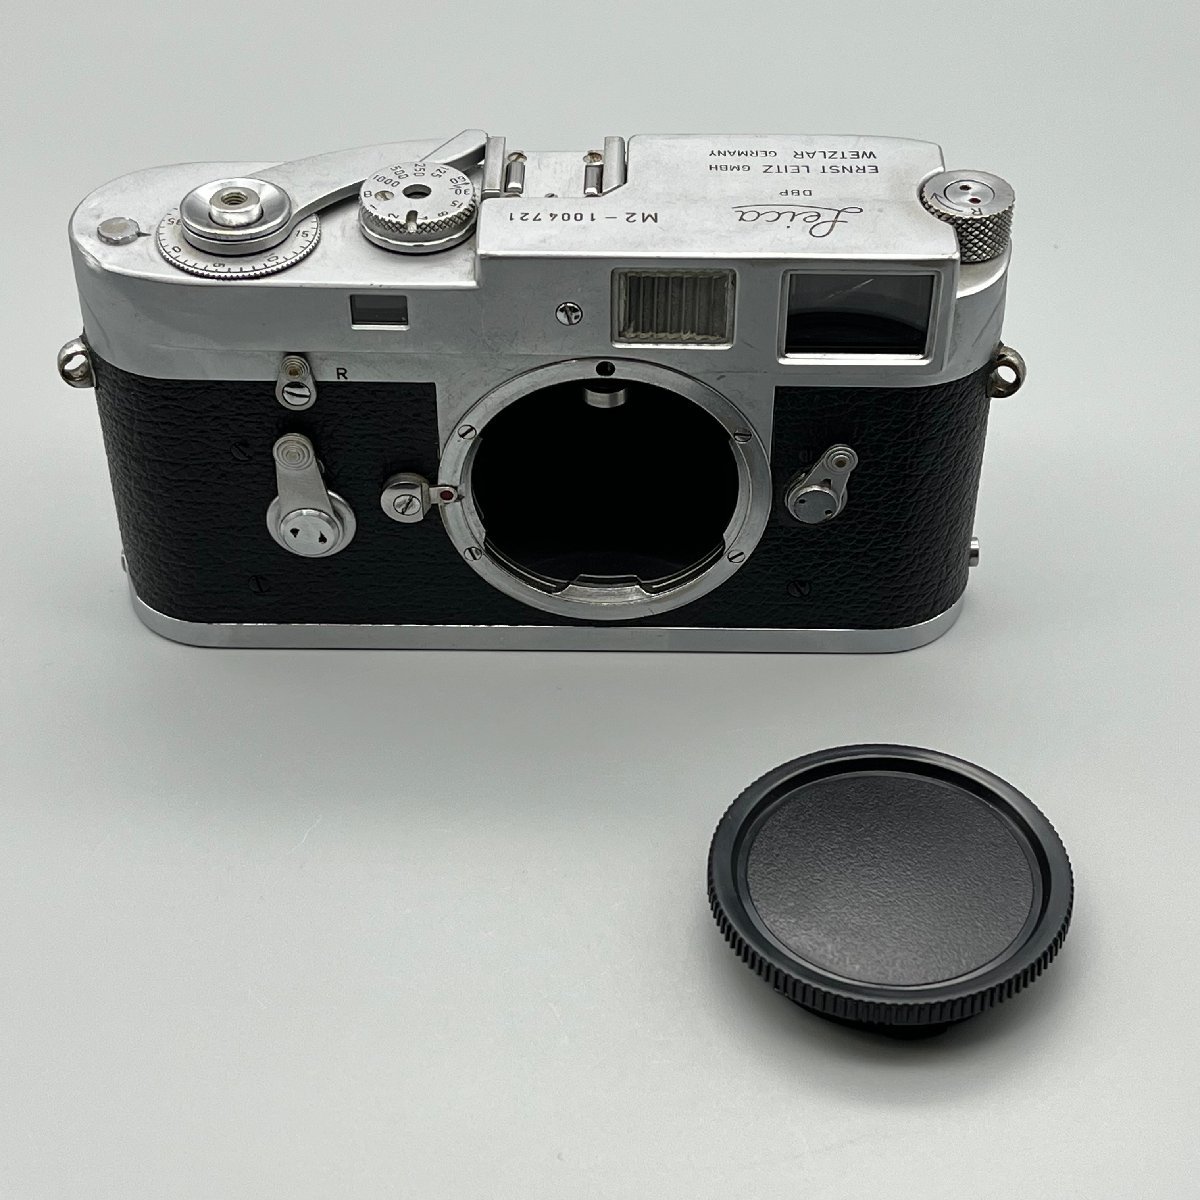 Leica M2 ライカ M2 後期型 セルフタイマー付 Leica ライカ Mマウント 100万番台 1960年 ドイツ製